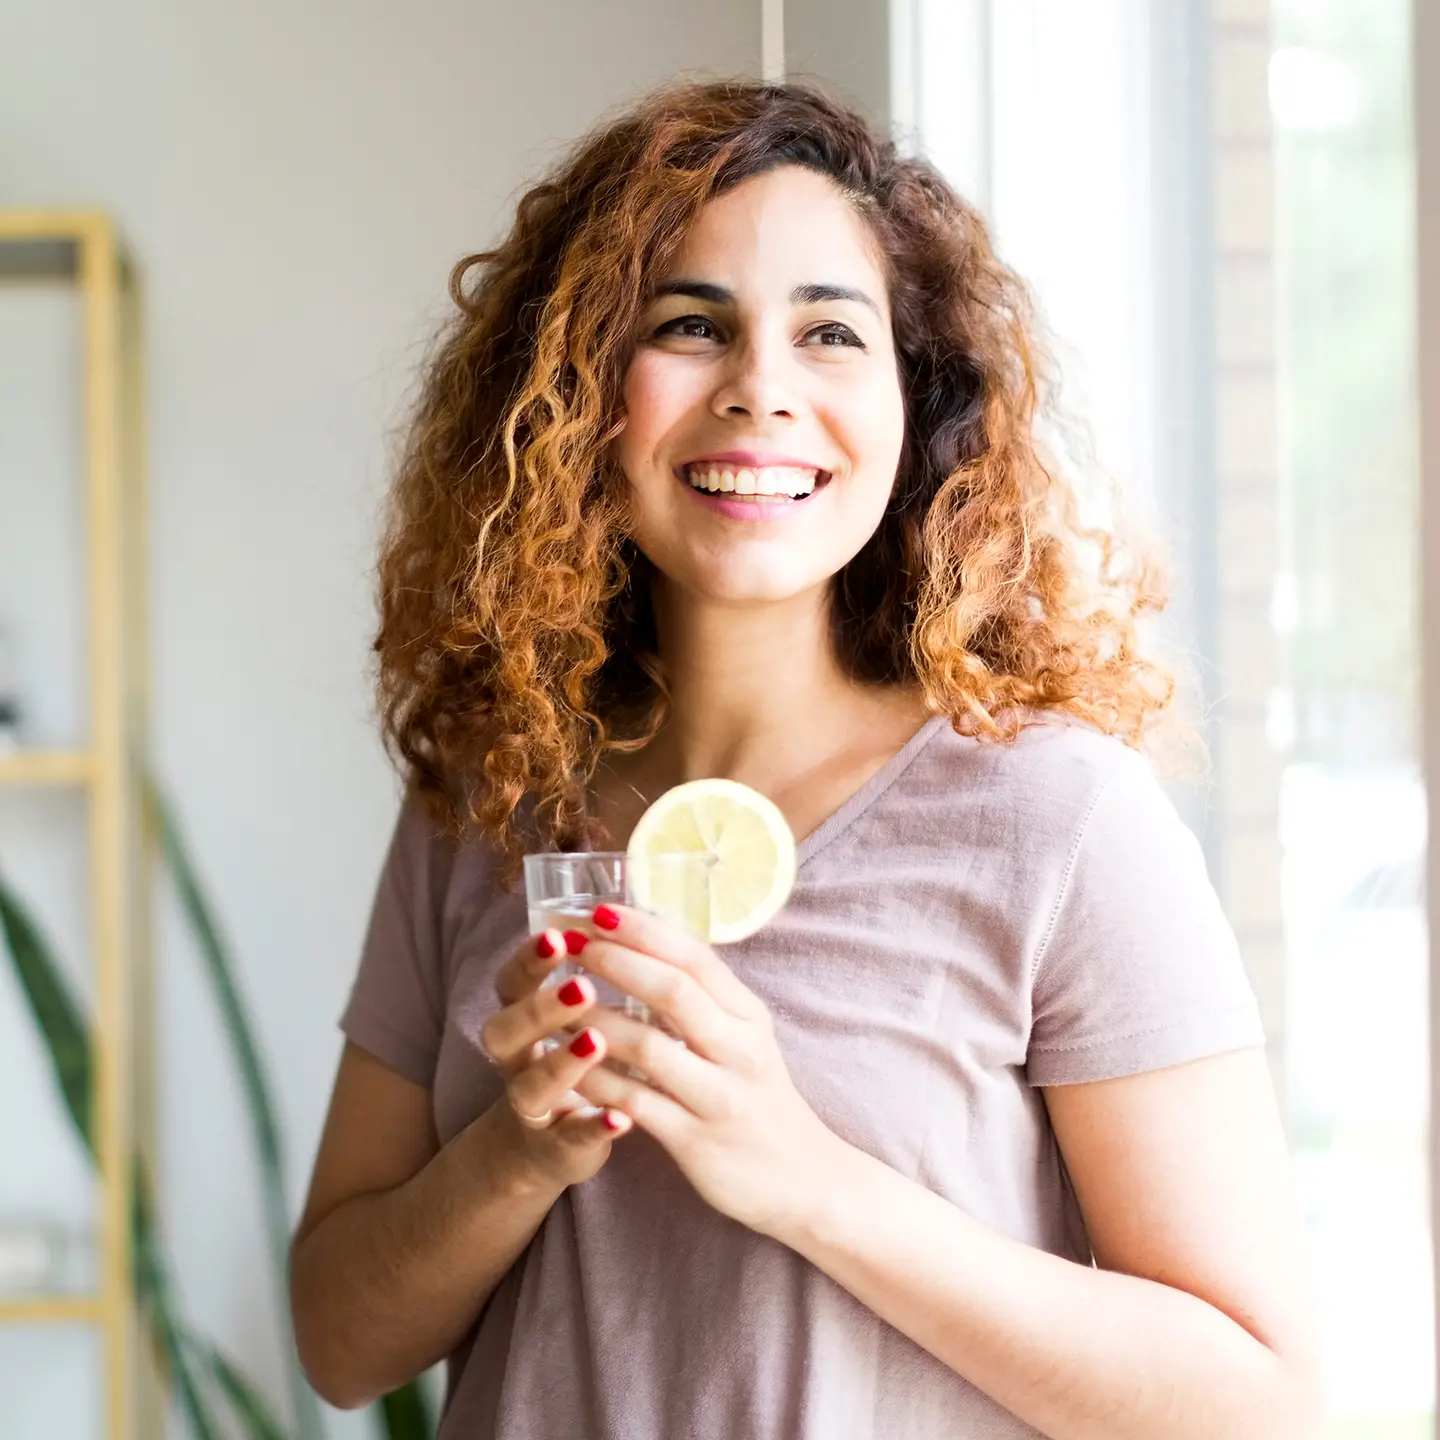 Eine Frau lacht und hält ein Glas Wasser mit einer Zitronenscheibe in der Hand.Testbild